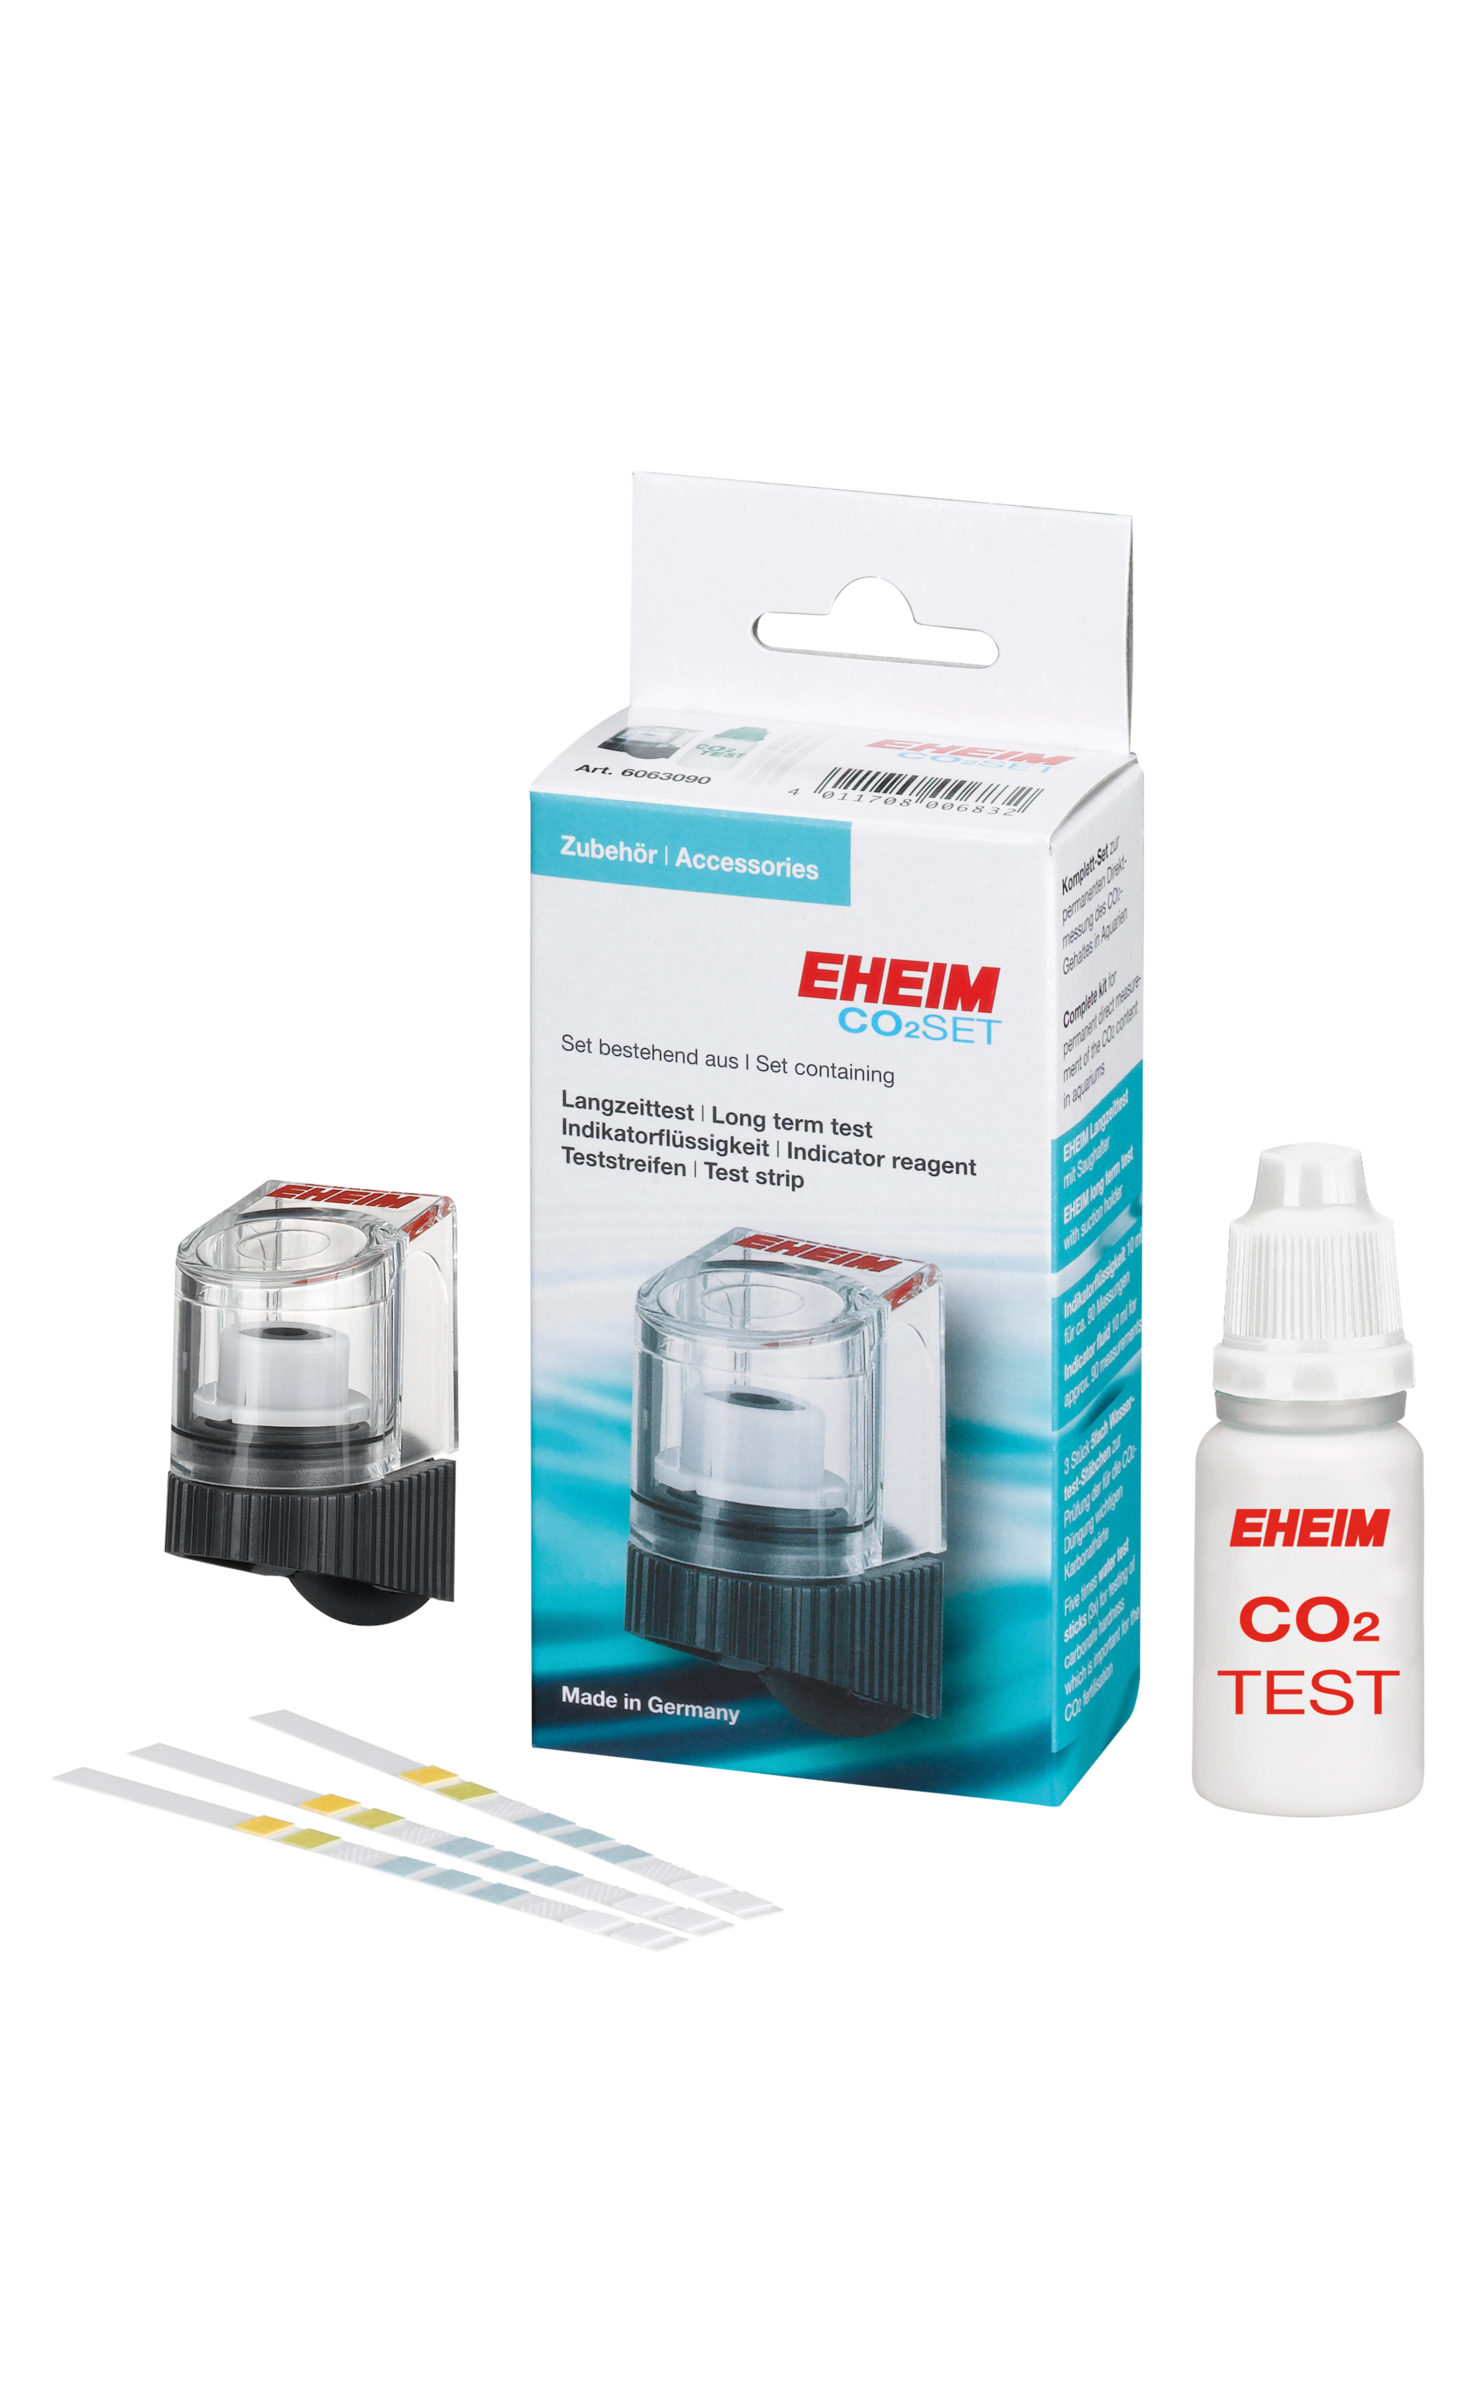 Set completo de CO2 de 500g desechable EHEIM CO2 SET 200 detalle 6